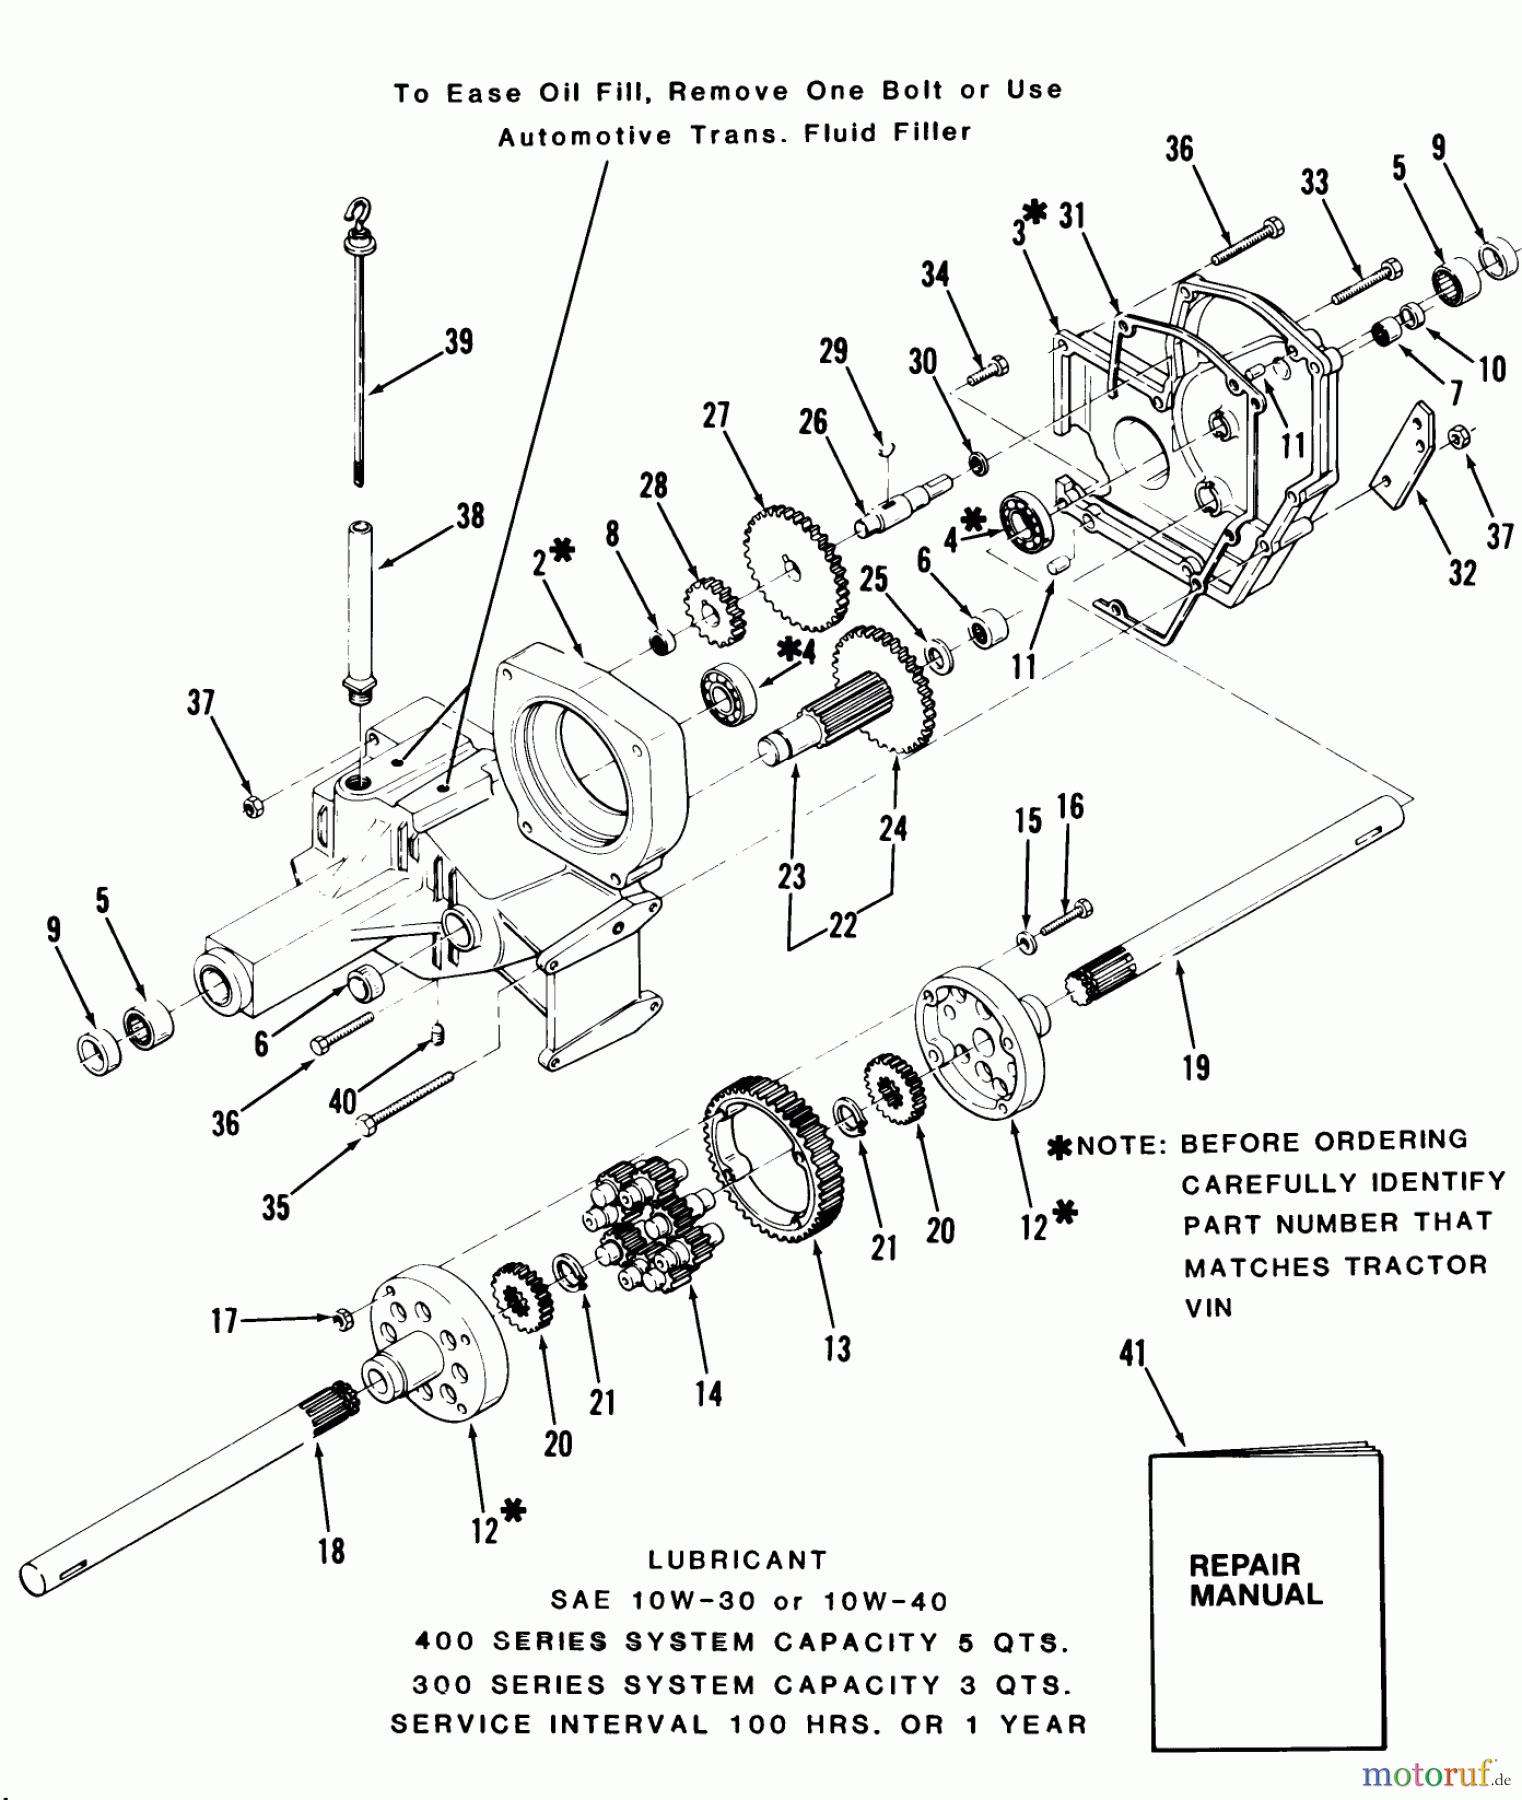  Toro Neu Mowers, Lawn & Garden Tractor Seite 1 31-17KE02 (417-A) - Toro 417-A Garden Tractor, 1986 TRANSAXLE